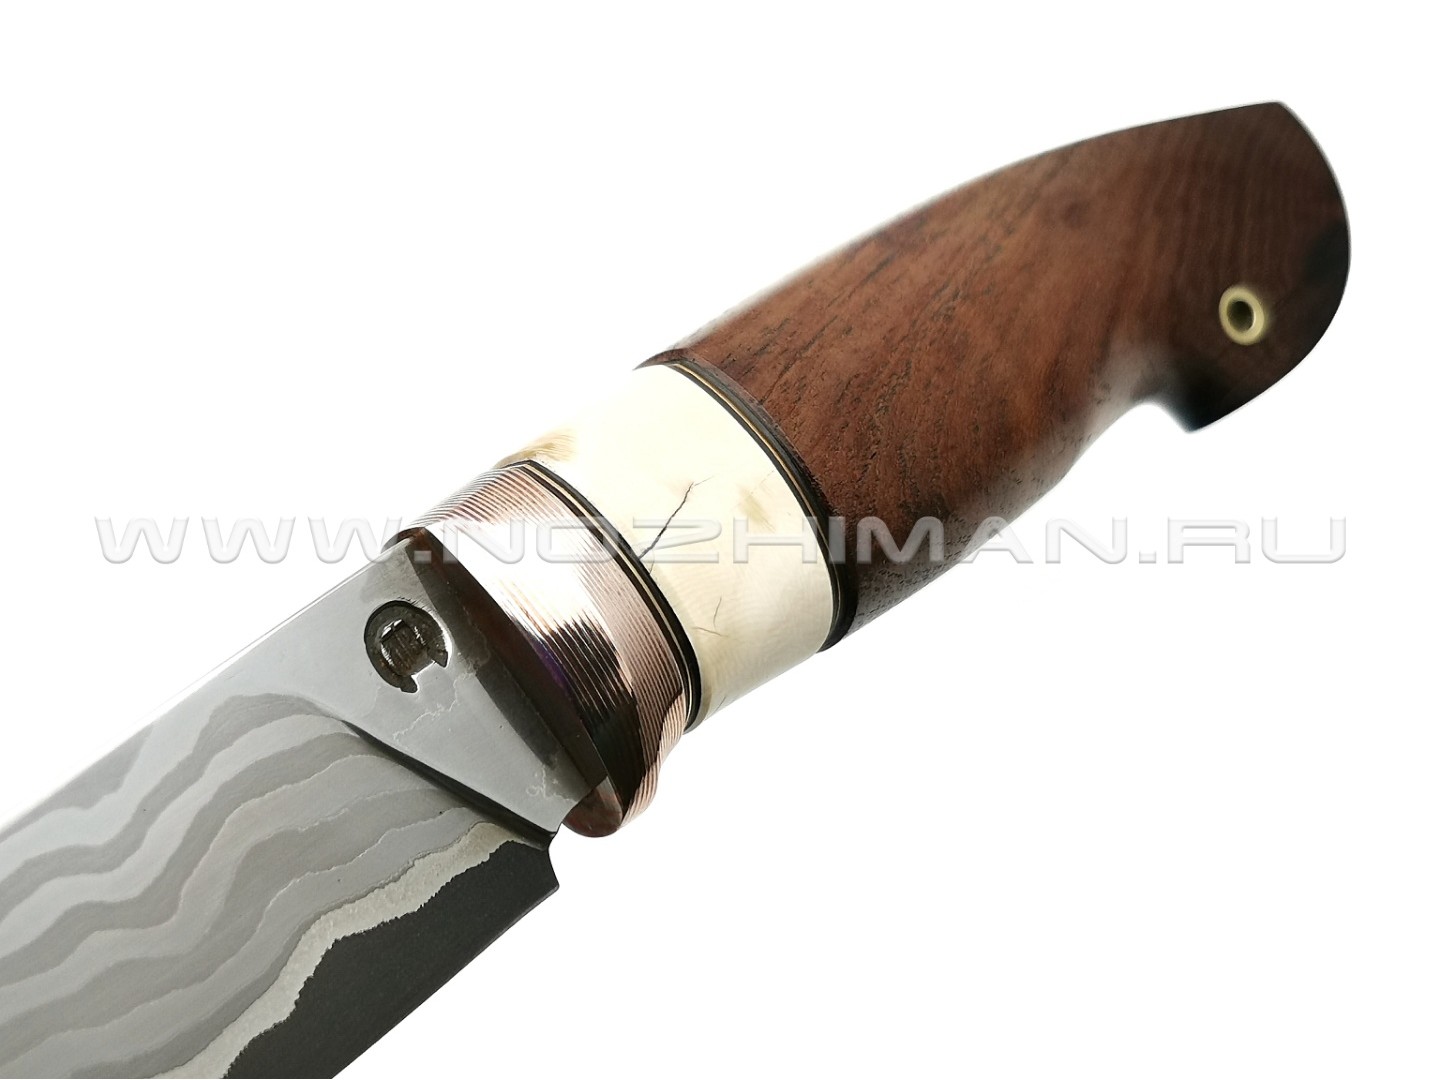 Нож "НЛВ20" ламинат K340 рукоять дерево орех, бивень мамонта, мокумэ-гане (Кузница Васильева)